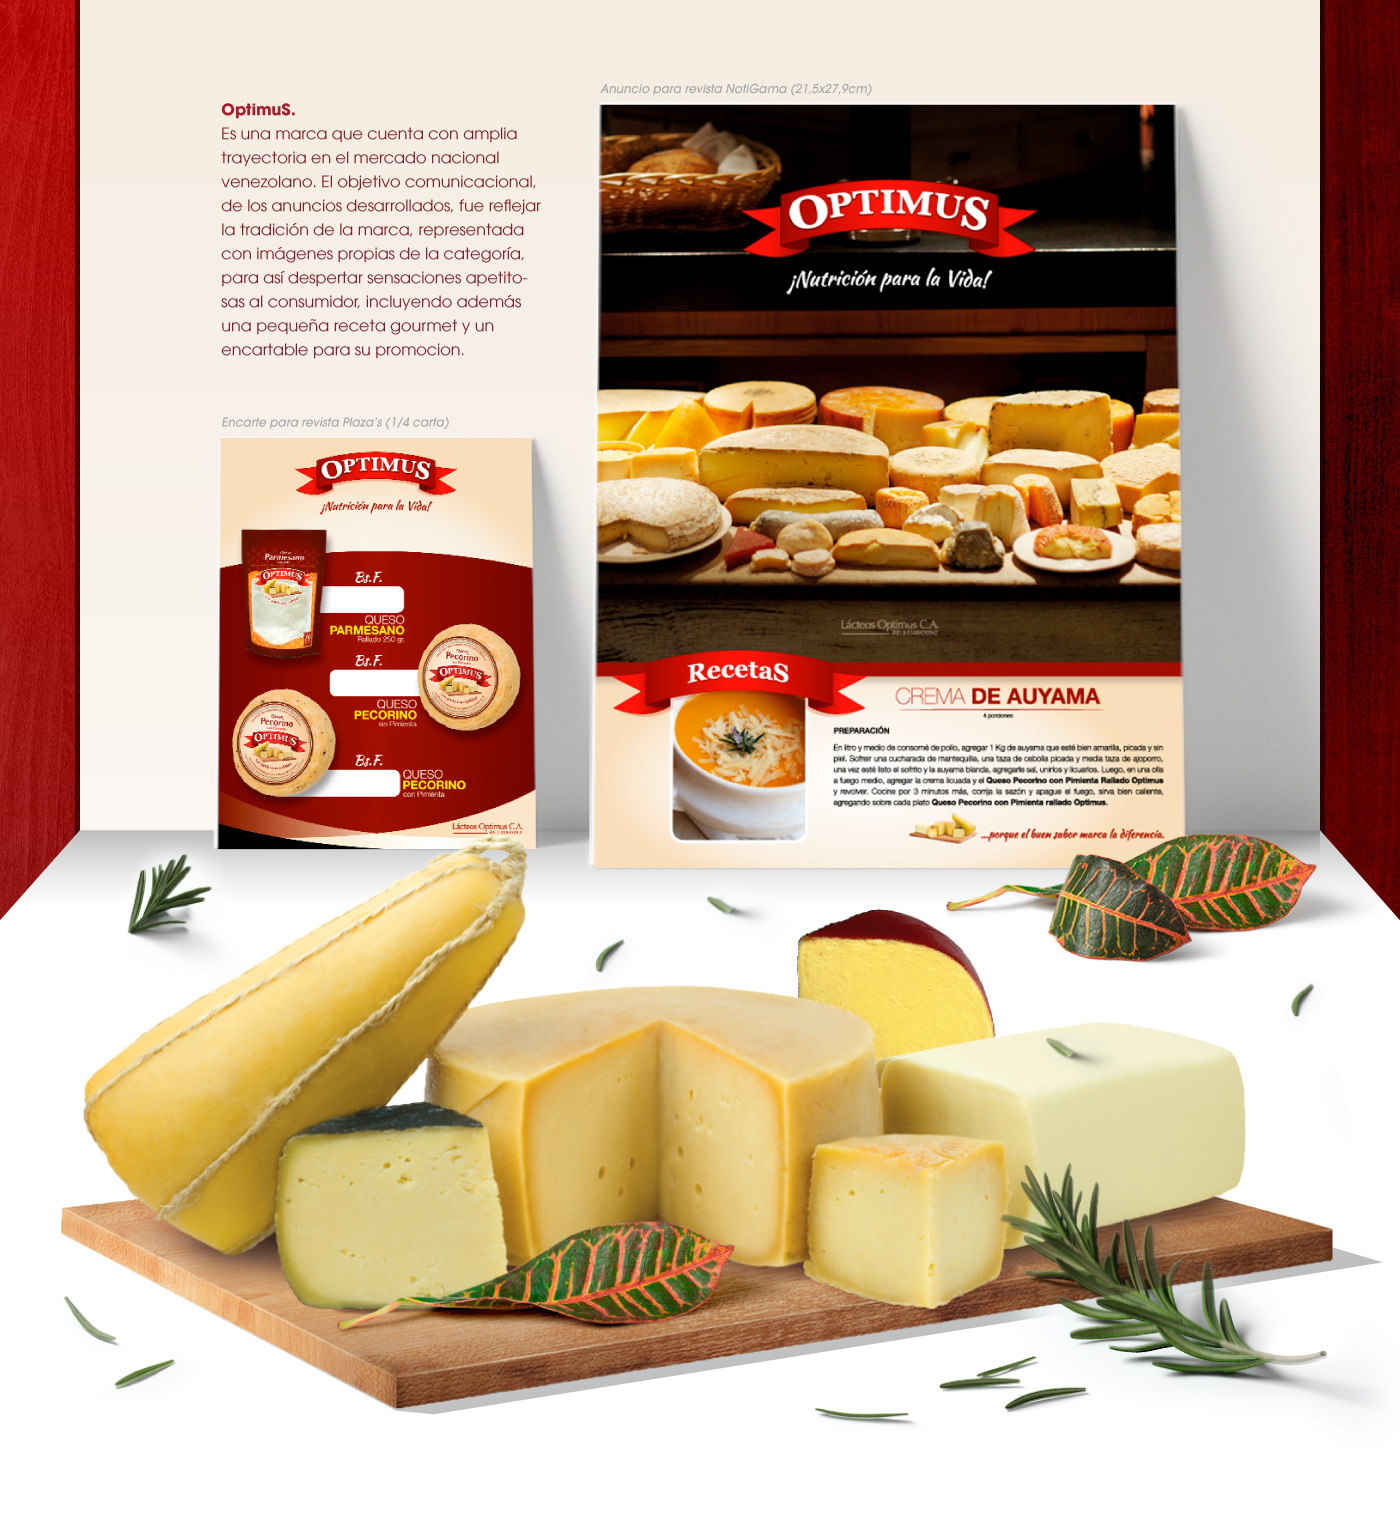 optimus nutricion Vida marca publicidad tradición Receta gourmet queso Cheese